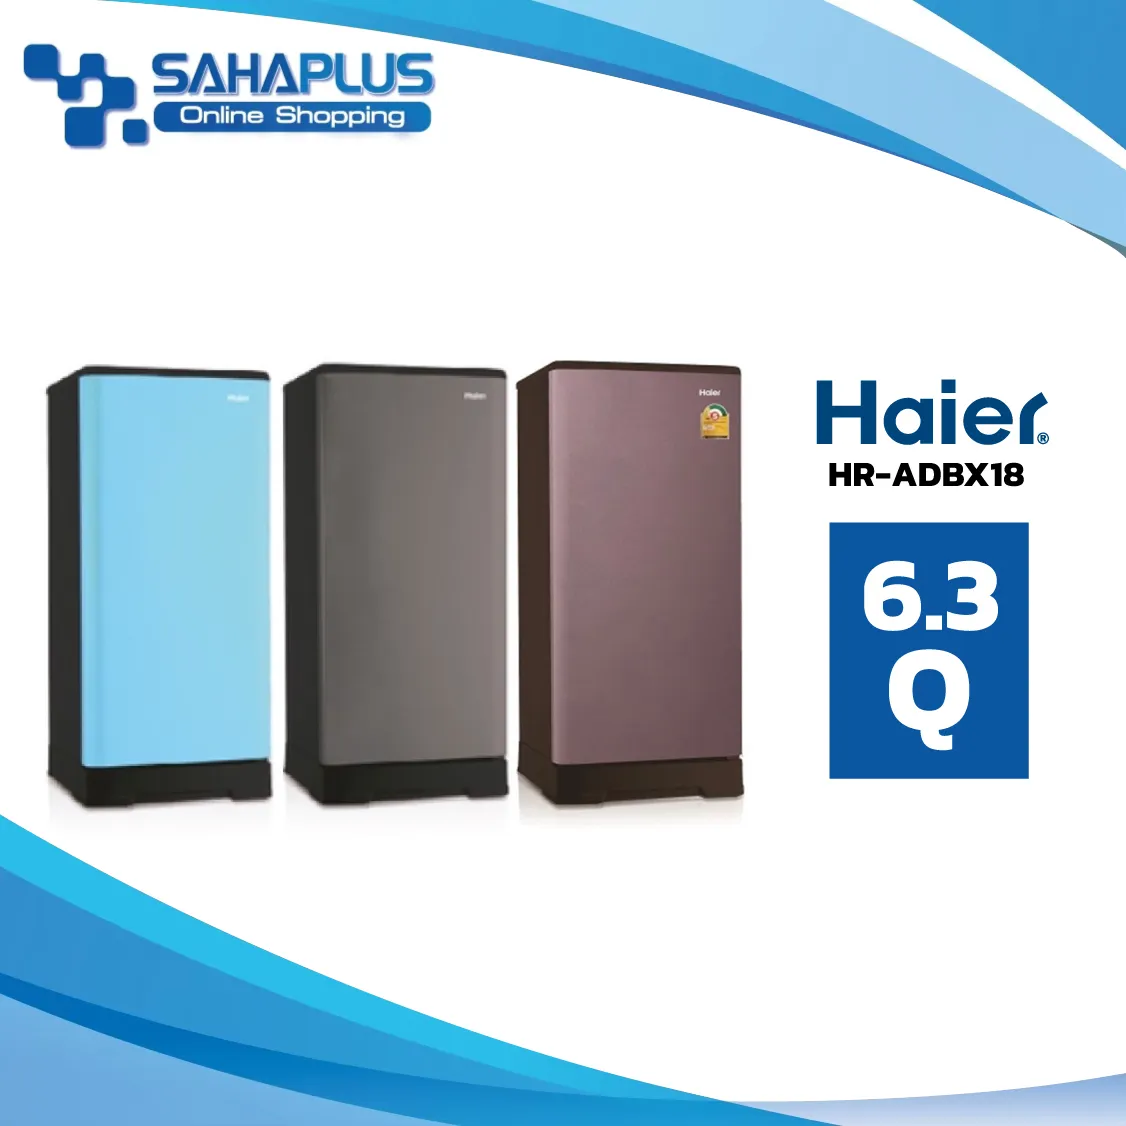 ตู้เย็น Haier รุ่น HR-ADBX18 ขนาด 6.3 Q  มี 3 สี ( รับประกันสินค้า 3 ปี )